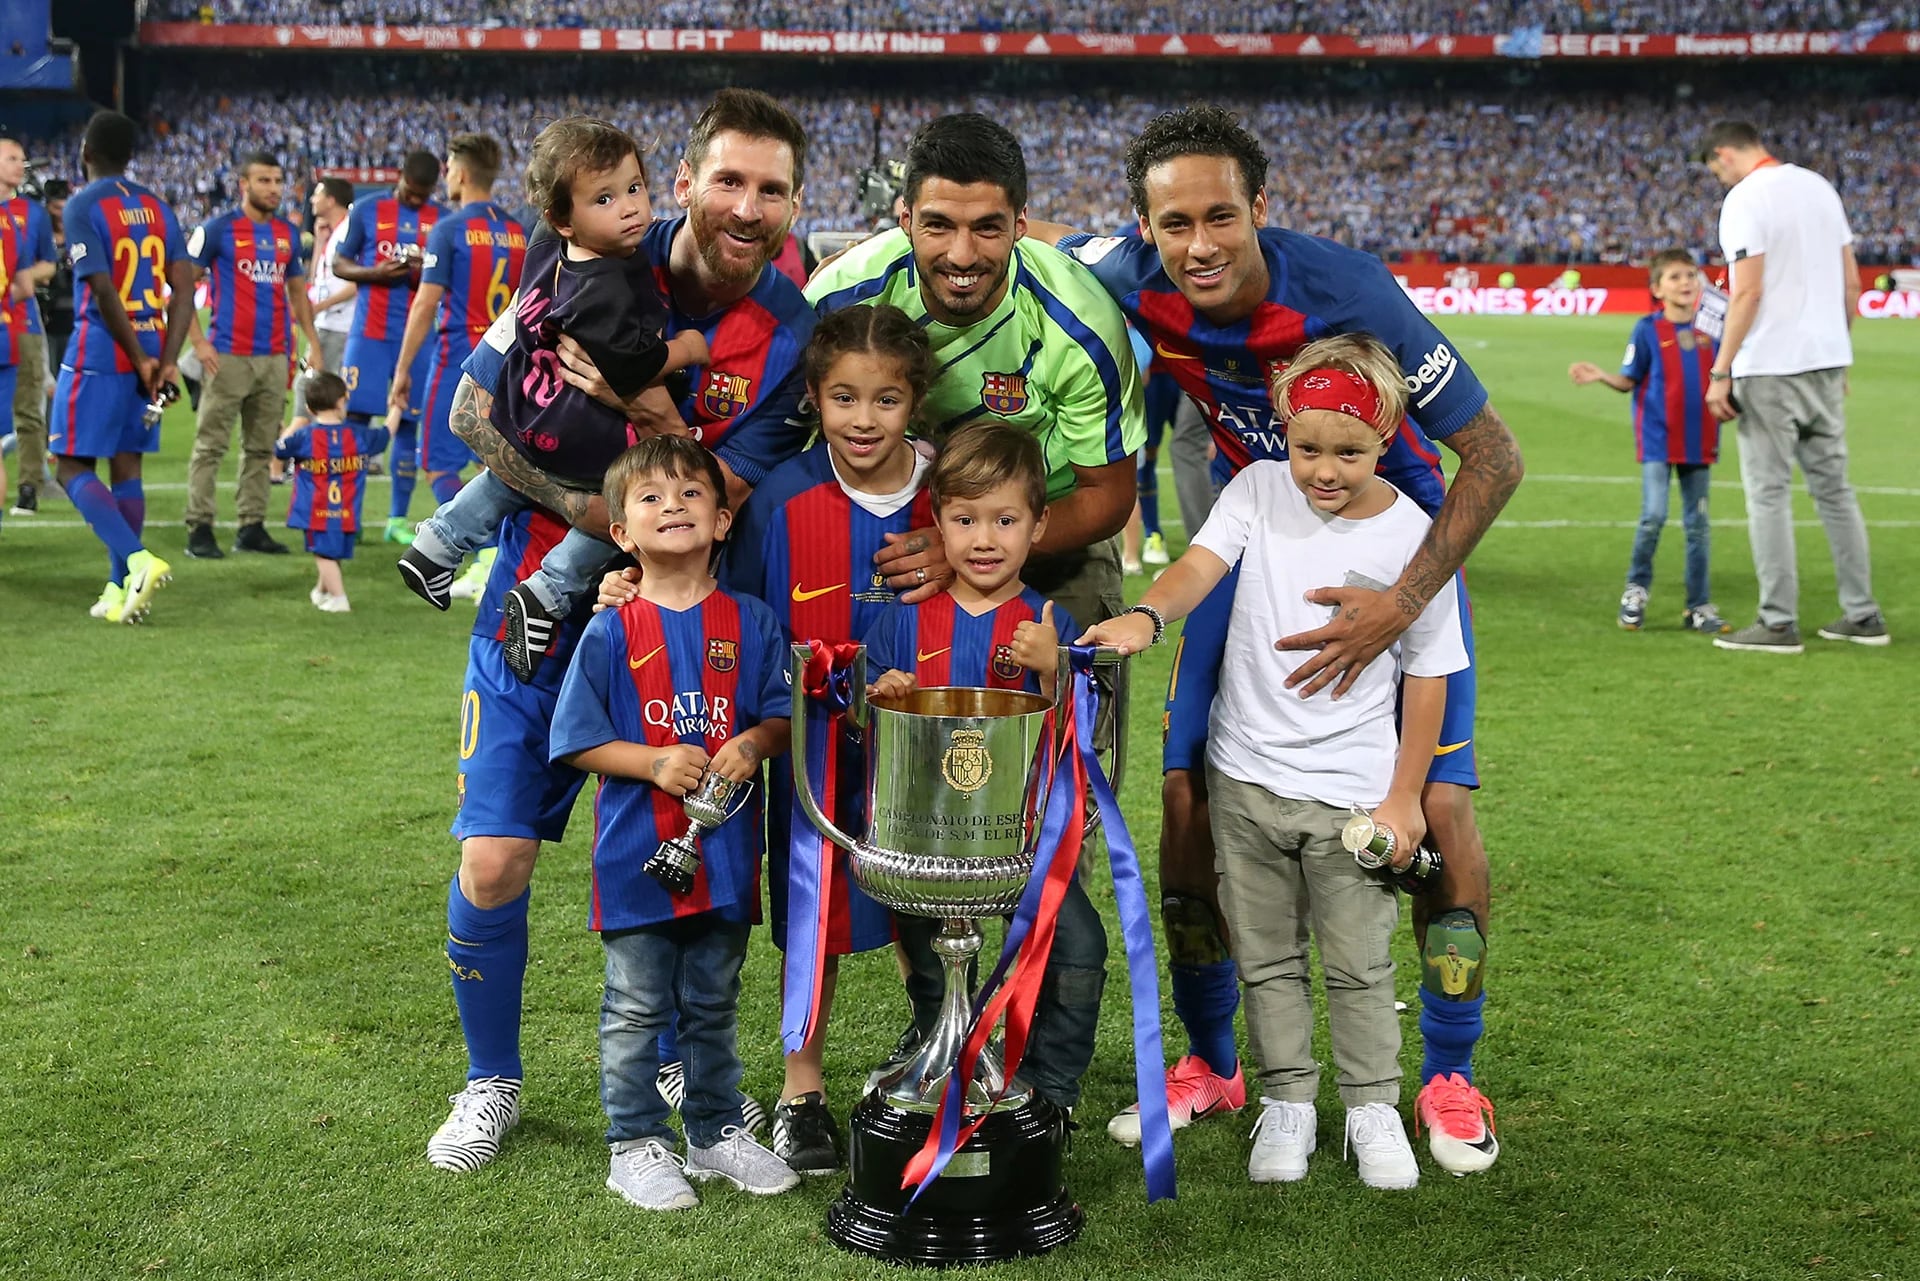 La final se jugó en el Estadio Vicente Calderón, de Madrid, y al término del encuentro quedó registrado el encuentro de la MSN (Messi, Neymar y Suárez) junto a sus hijos y la Copa del Rey